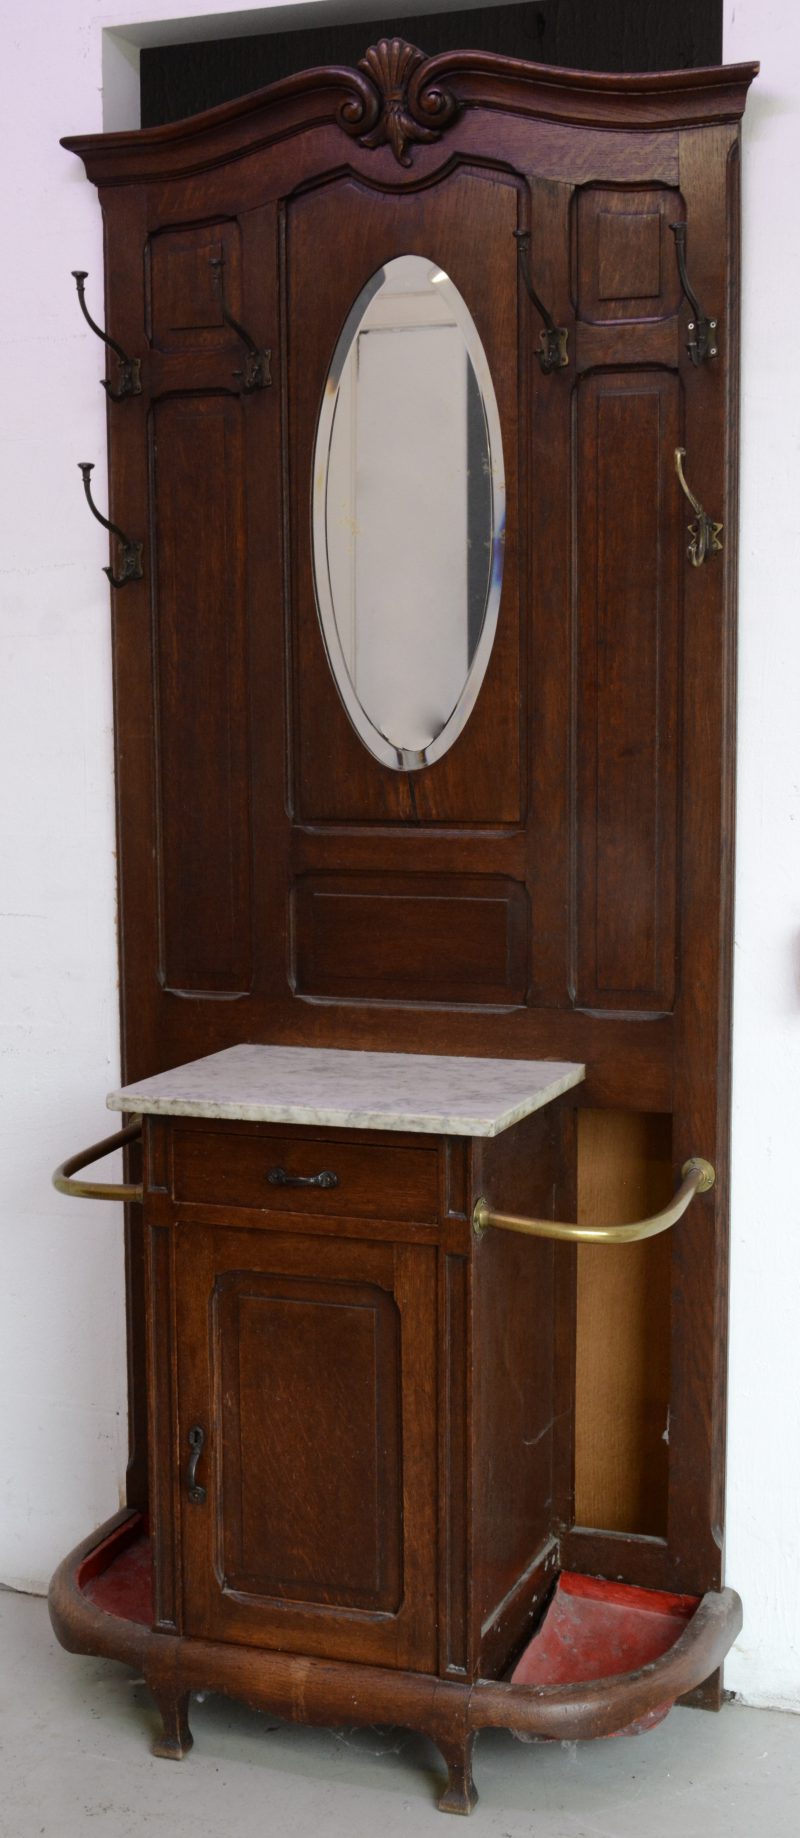 Een grote wandkapstok met spiegeltje en aan weerskanten een paraplustaander met metalen bodem. Centraal een deurtje en een lade.